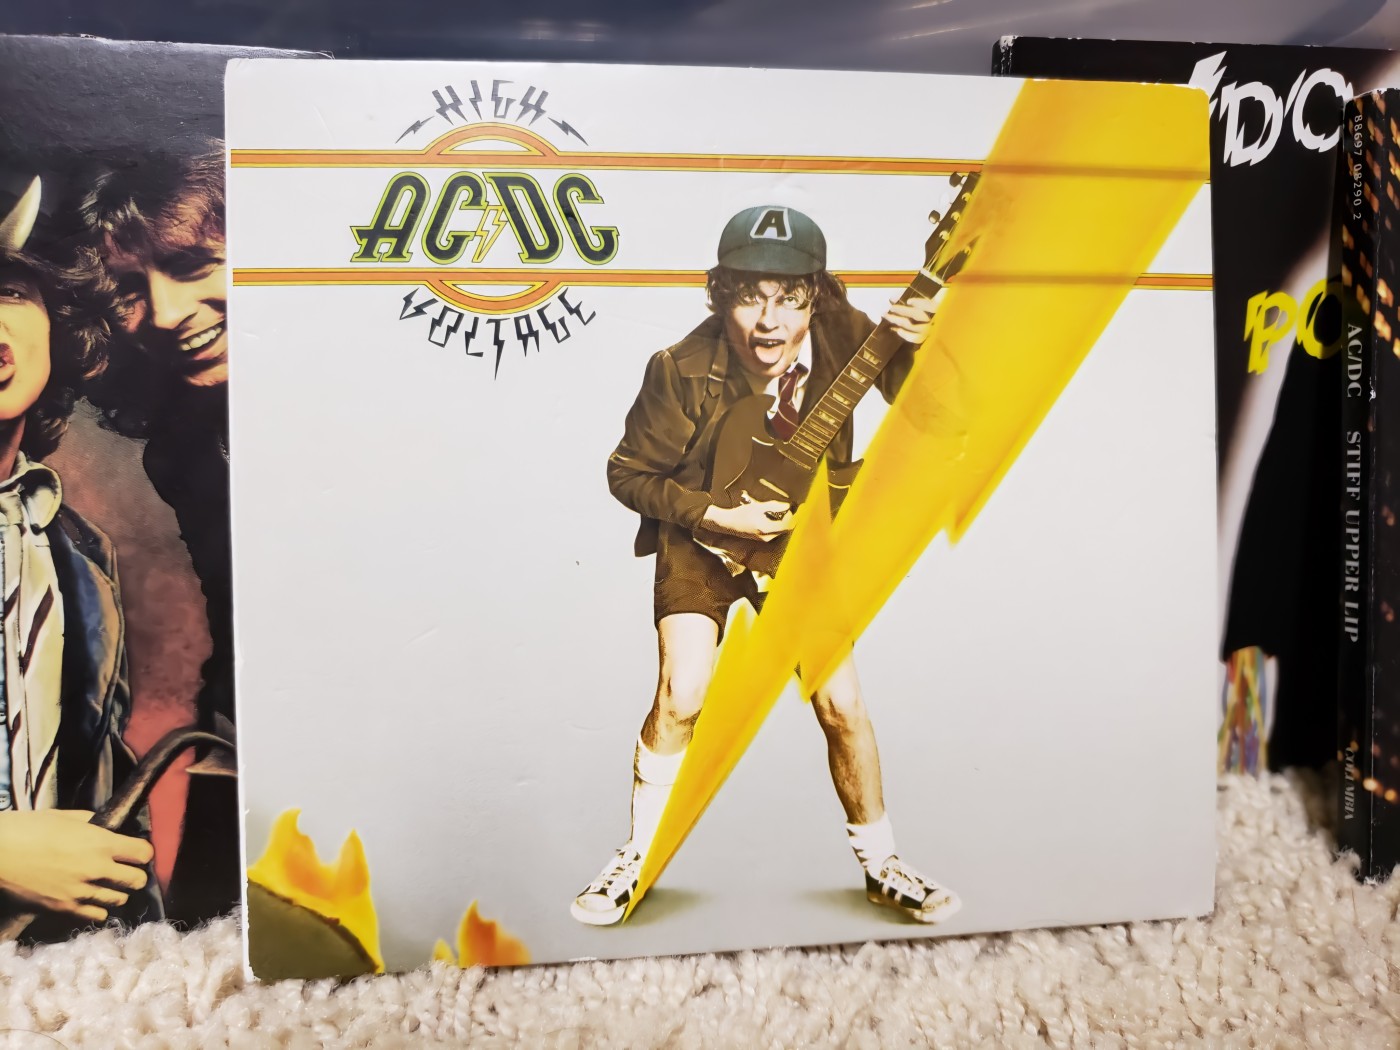 AC/DC - Live Wire (1979 Paris) 